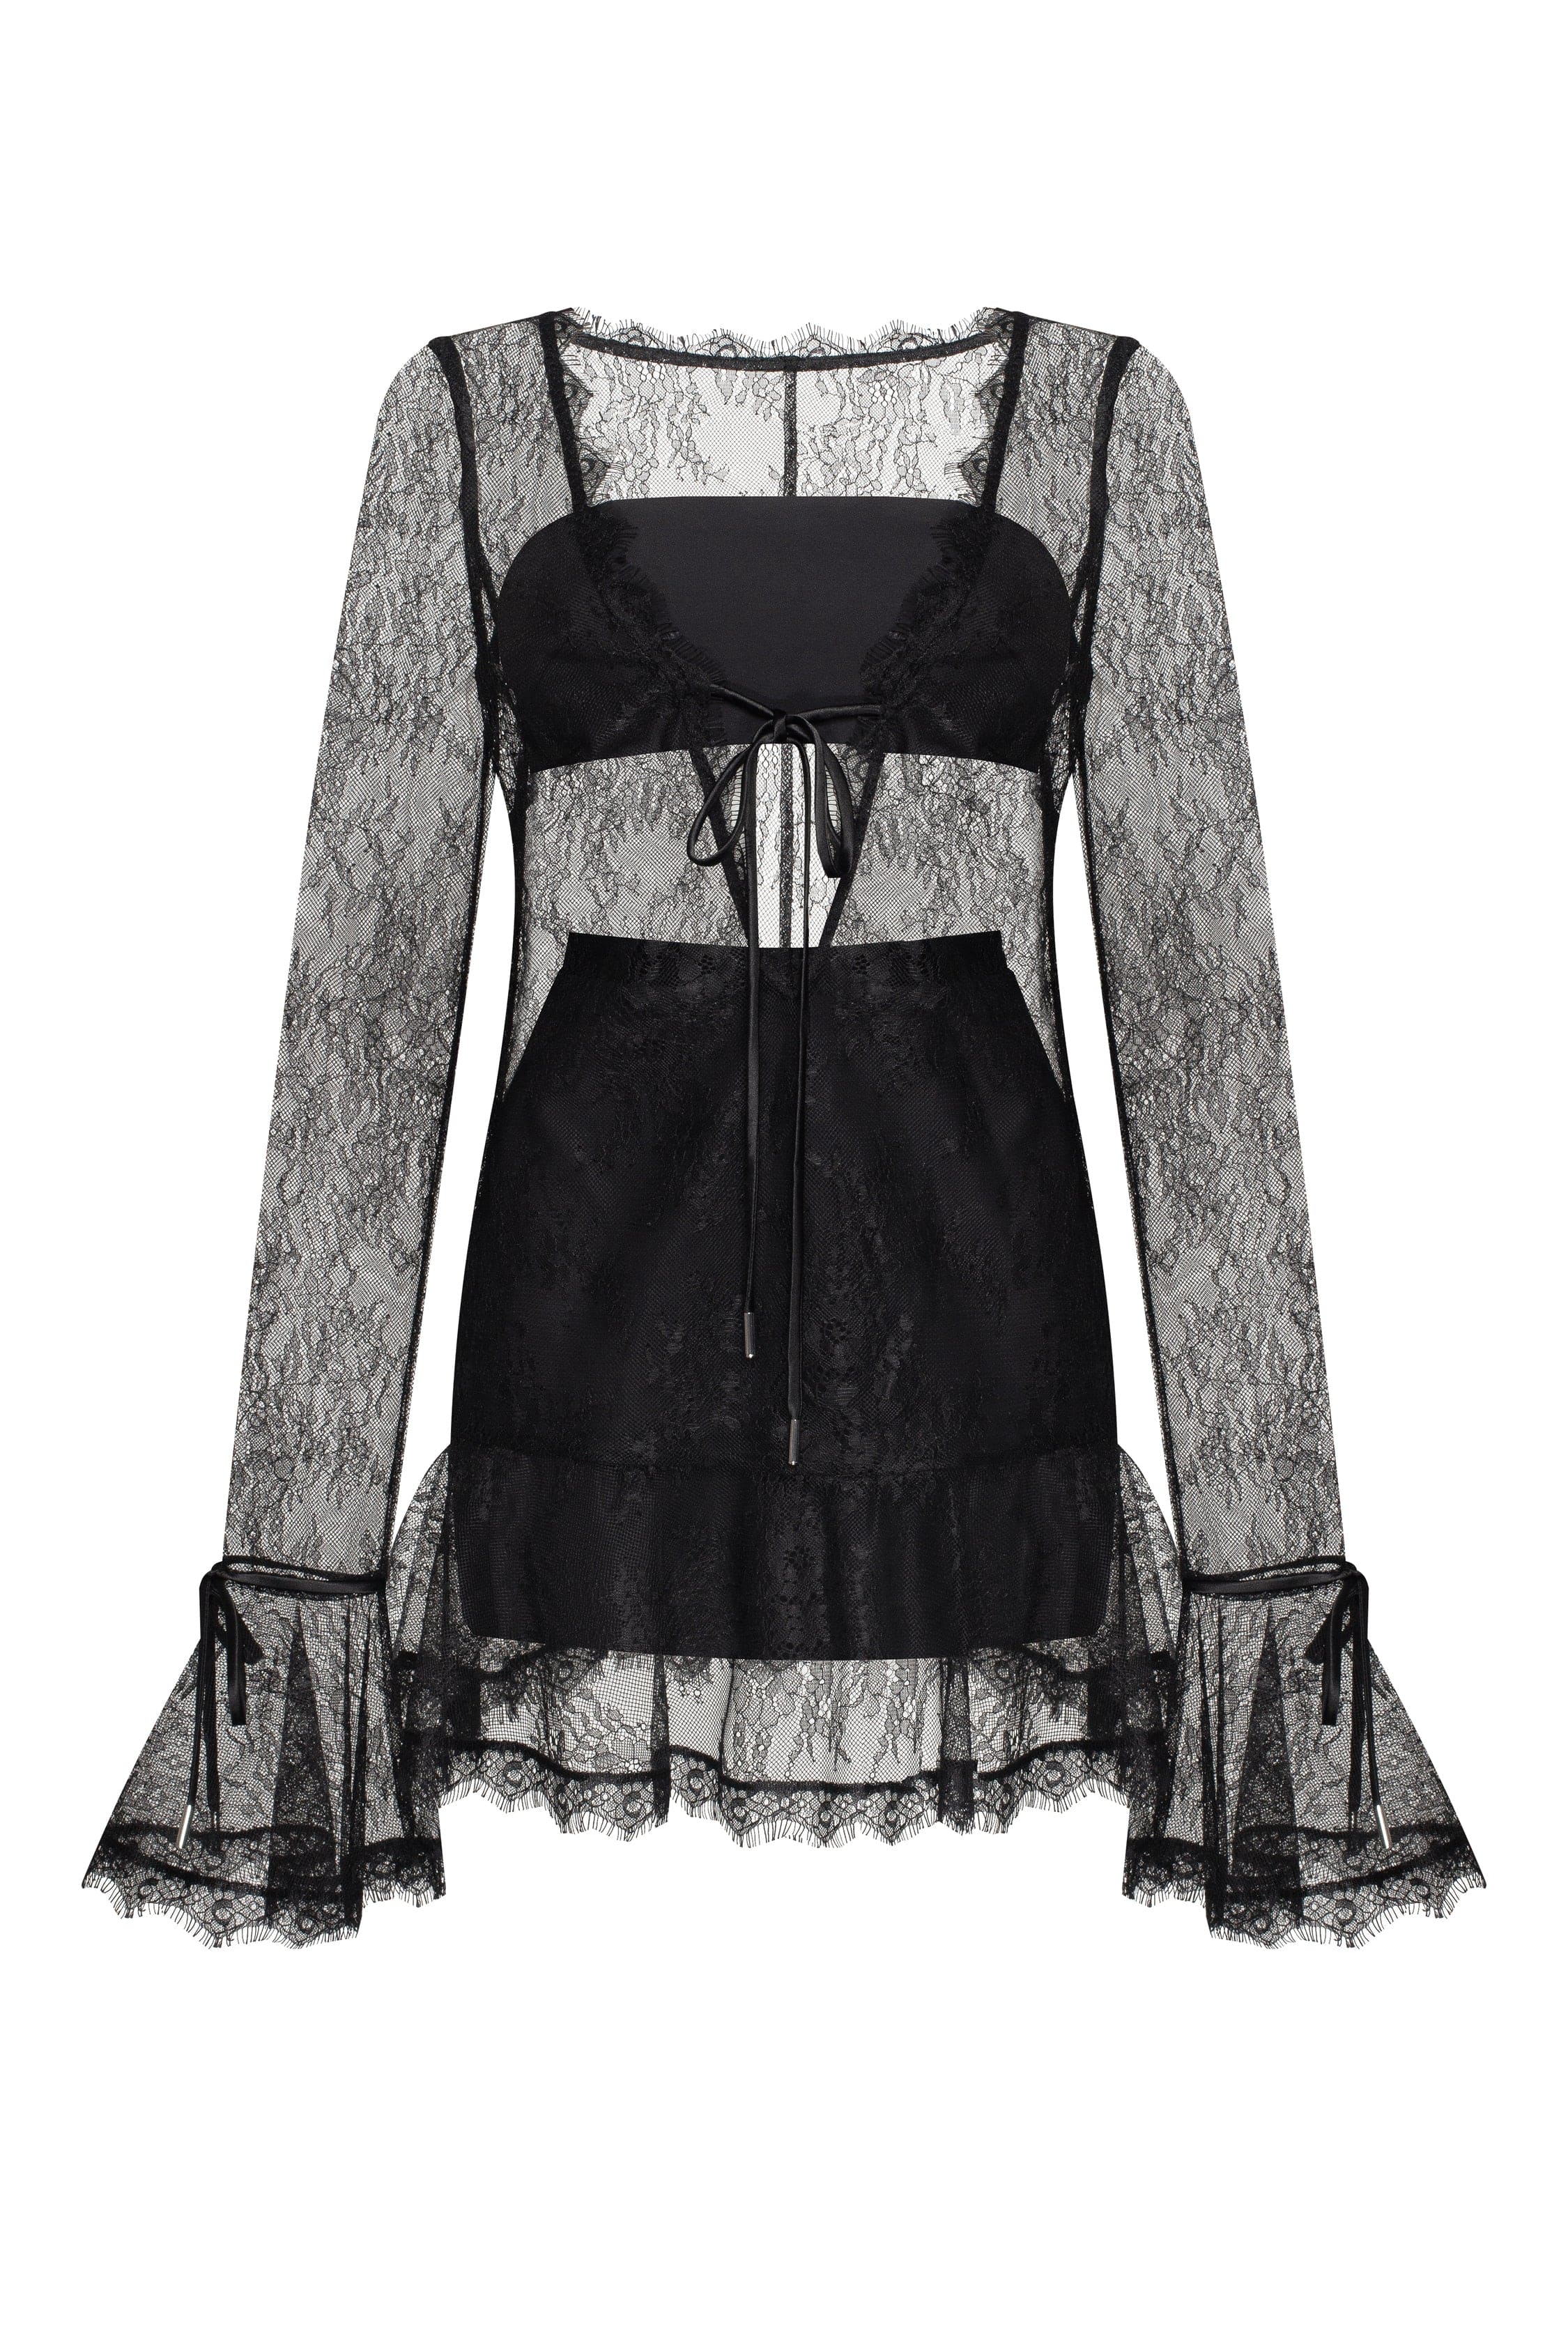 mini Xo in USA, Worldwide semi-transparent dress Dresses black, delivery - Alluring Milla lace Xo ➤➤